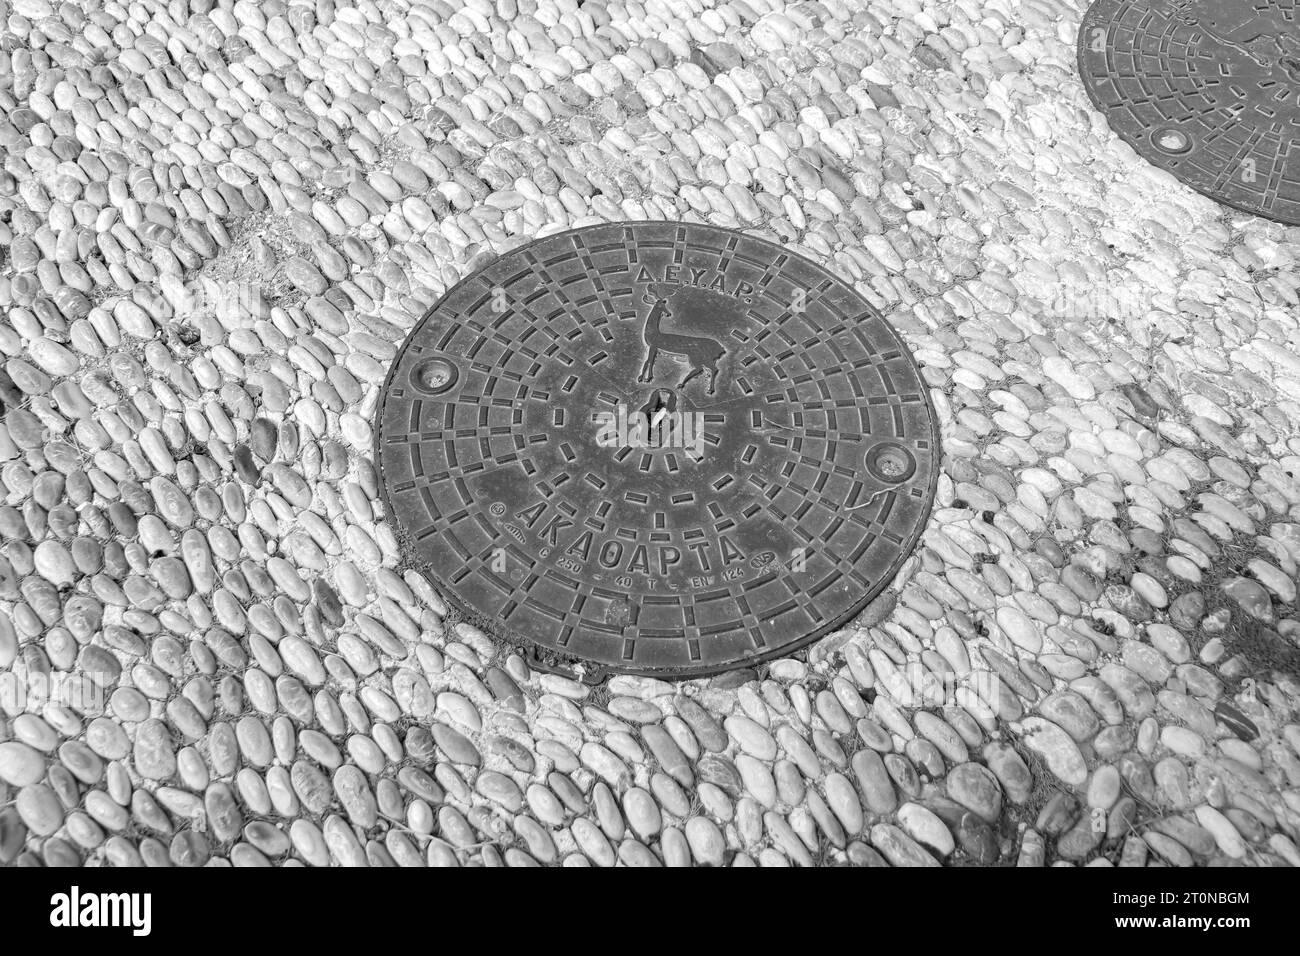 Runder Mannlochdeckel, eine abnehmbare Platte, die eine Öffnung im Boden bedeckt, entworfen für die Akropolis von Rhodos in Schwarz-weiß Stockfoto